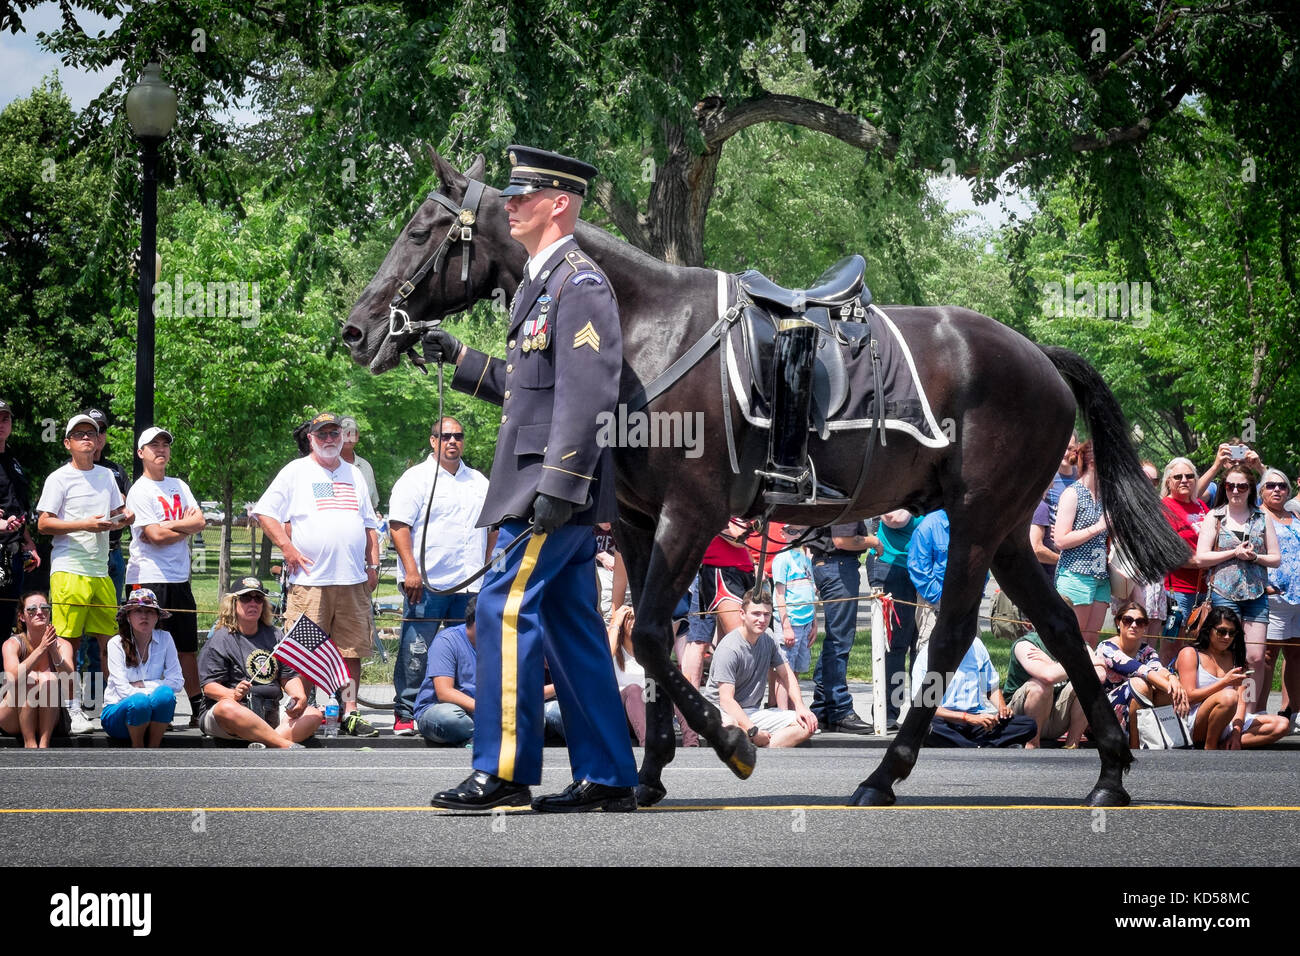 Washington DC - 25. Mai 2015: Memorial Day Parade, geführt von einem riderless Horse zu Ehren derer, die im Dienst gestorben sind. Stiefel in den Bügel sind vertauscht Stockfoto